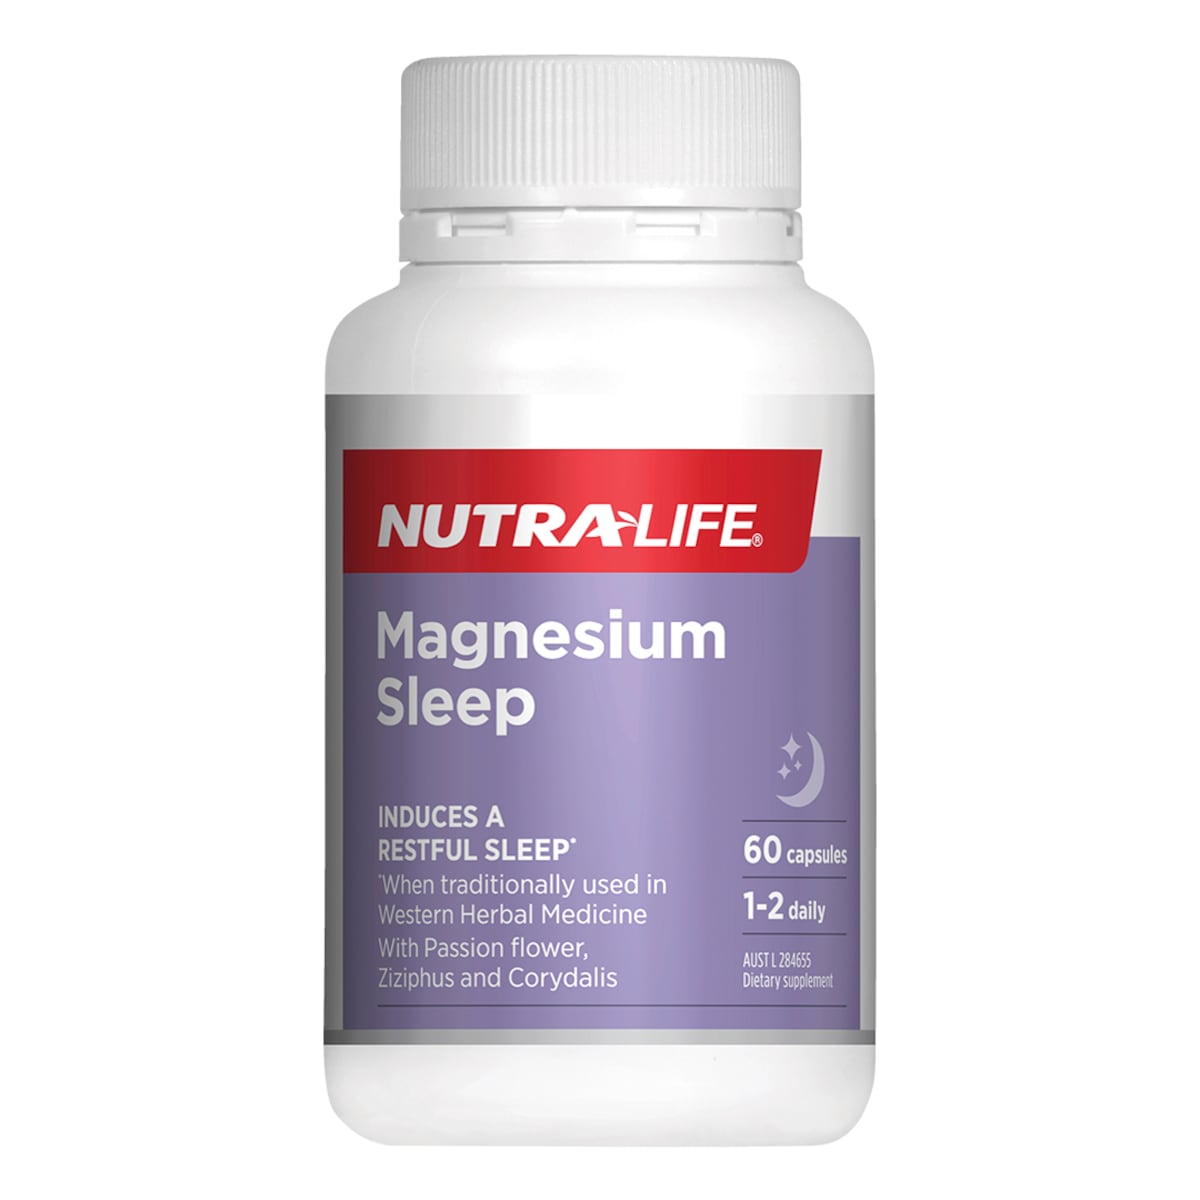 Nutra-Life Magnesium Sleep 60 Capsules Australia